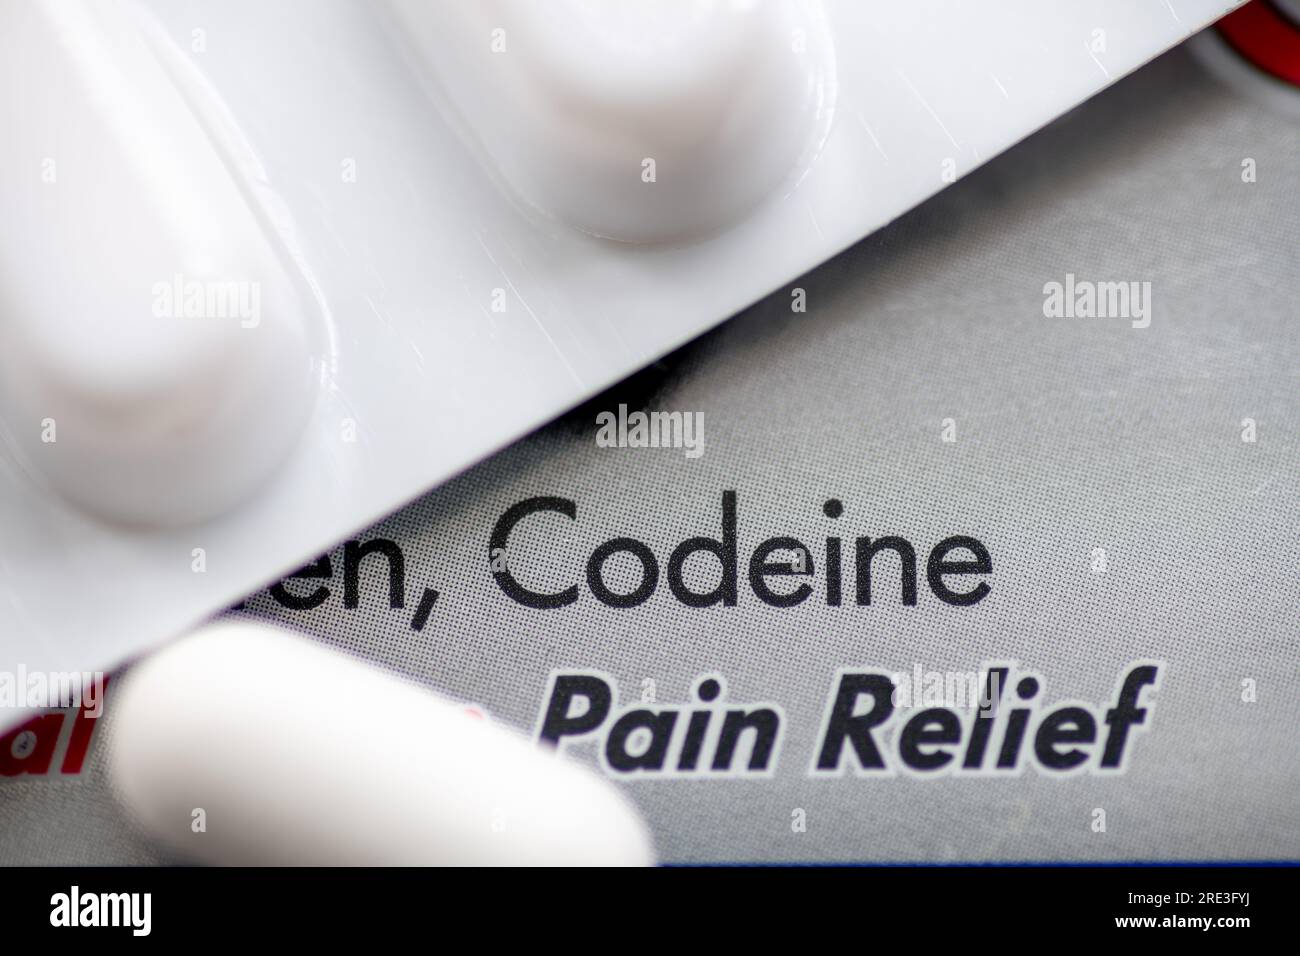 Une boîte de médicaments anti-douleur contenant de la codéine, un opioïde qui crée une forte dépendance. Banque D'Images